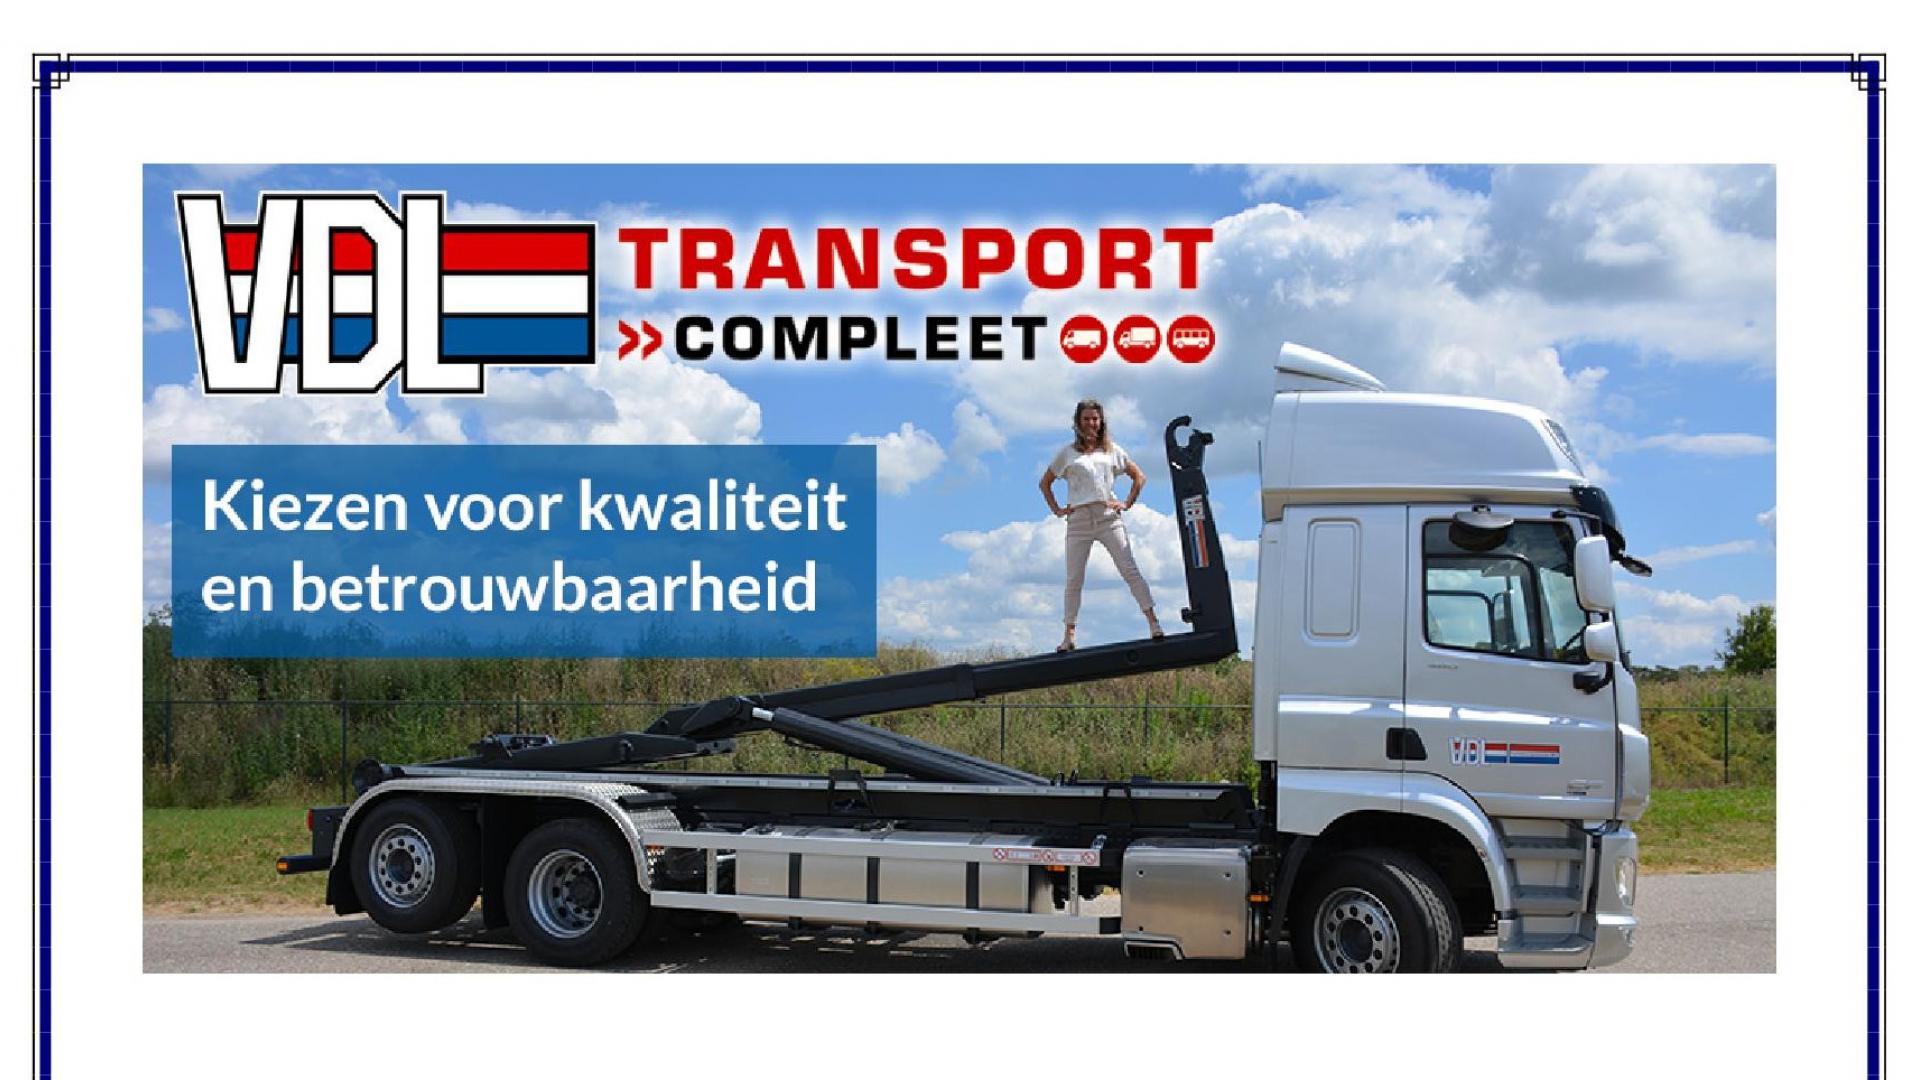 Transport Complete 2019 in Gorinchem, the Netherlands